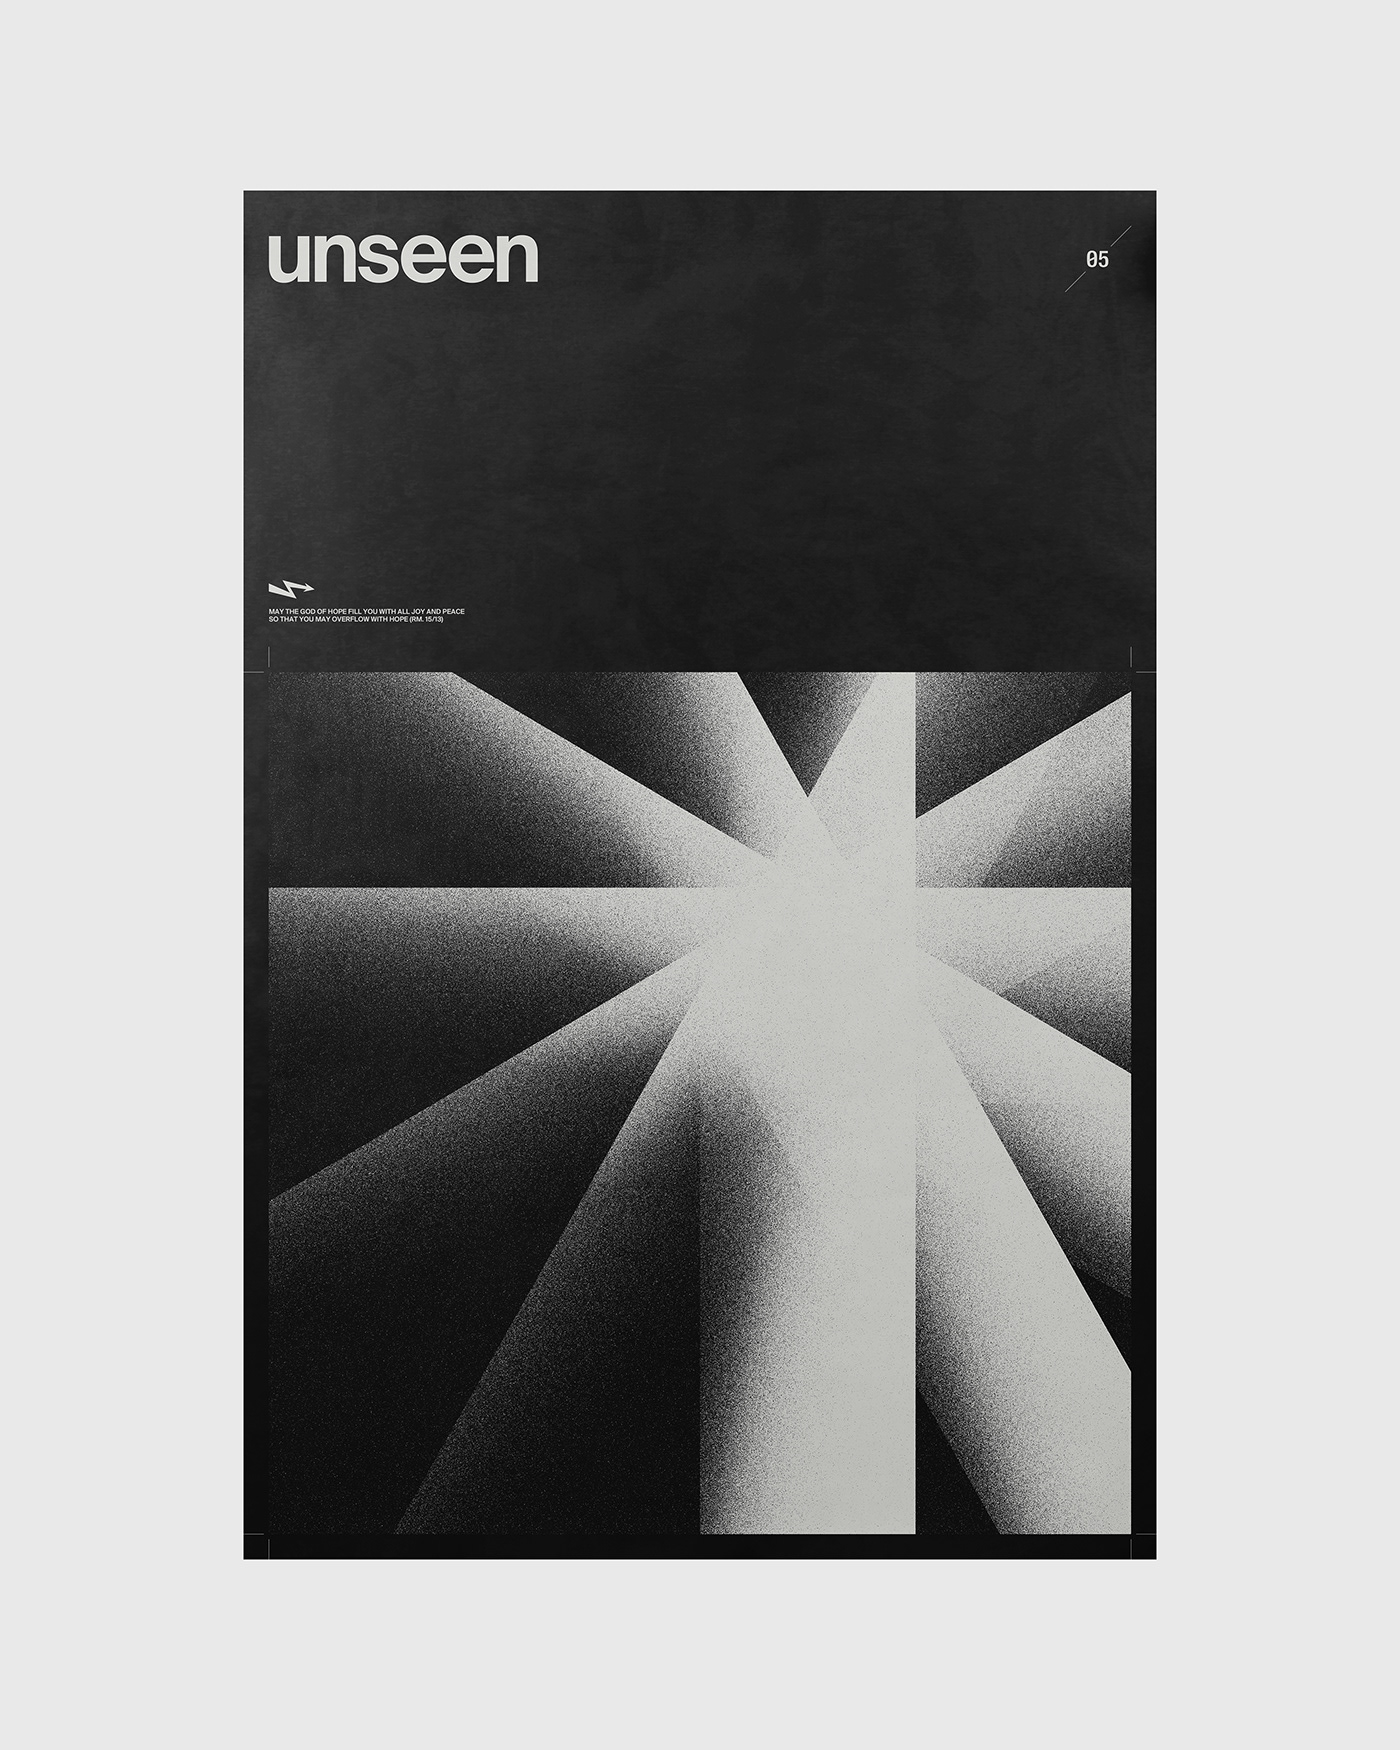 Unseen poster by Xtian Miller